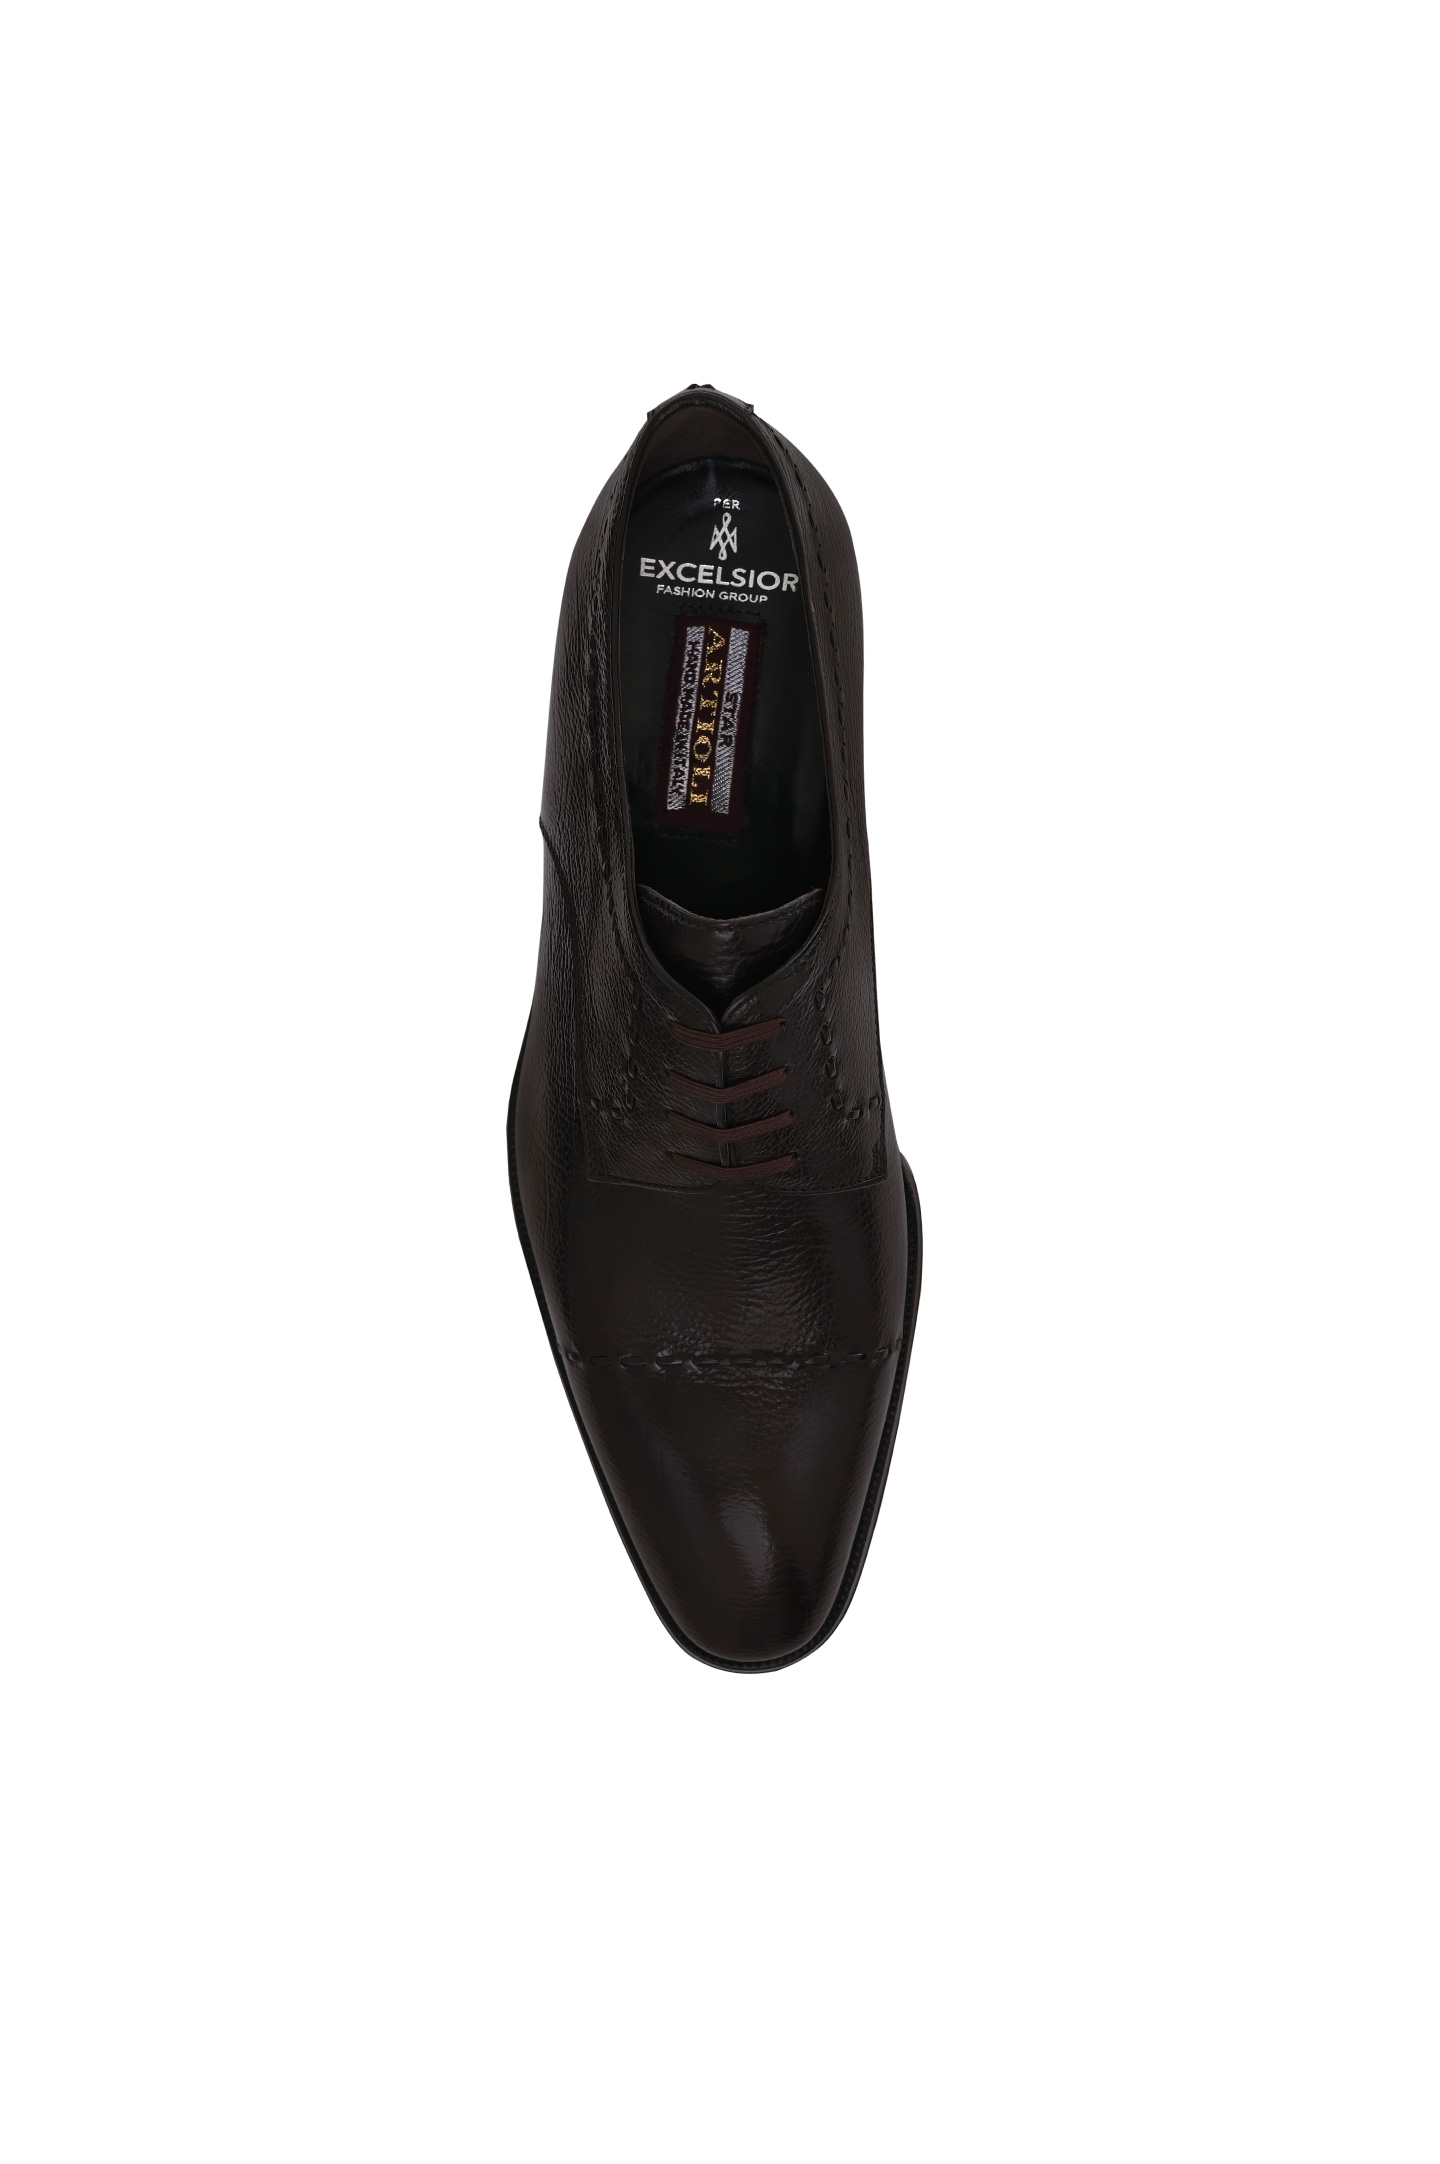 Туфли ARTIOLI 0G6S273, цвет: Темно-коричневый, Мужской